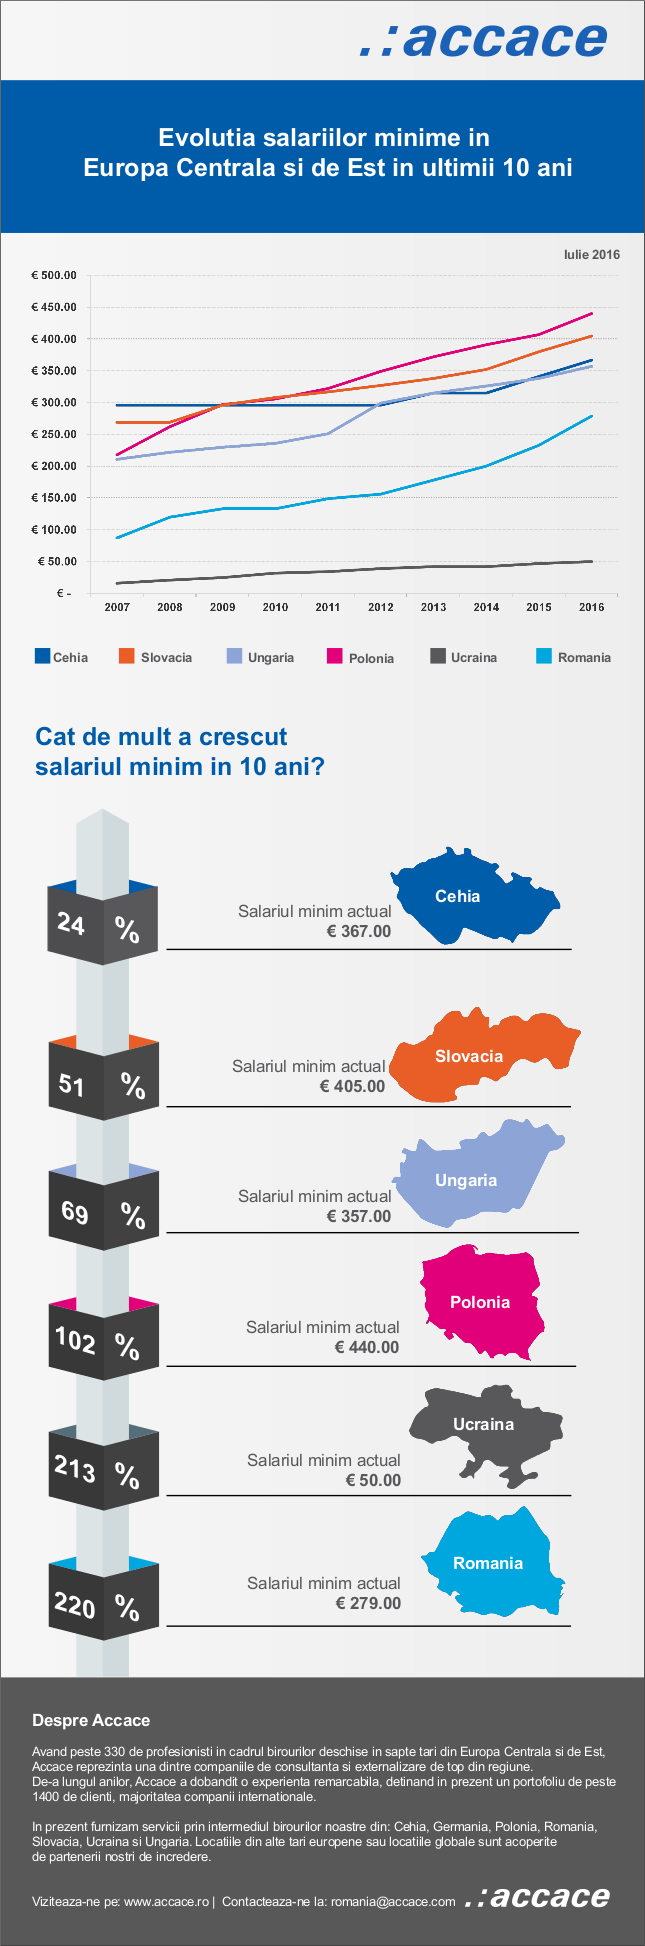 Europa Centrala si de Est - evolutia salariului minim in ultimii 10 ani